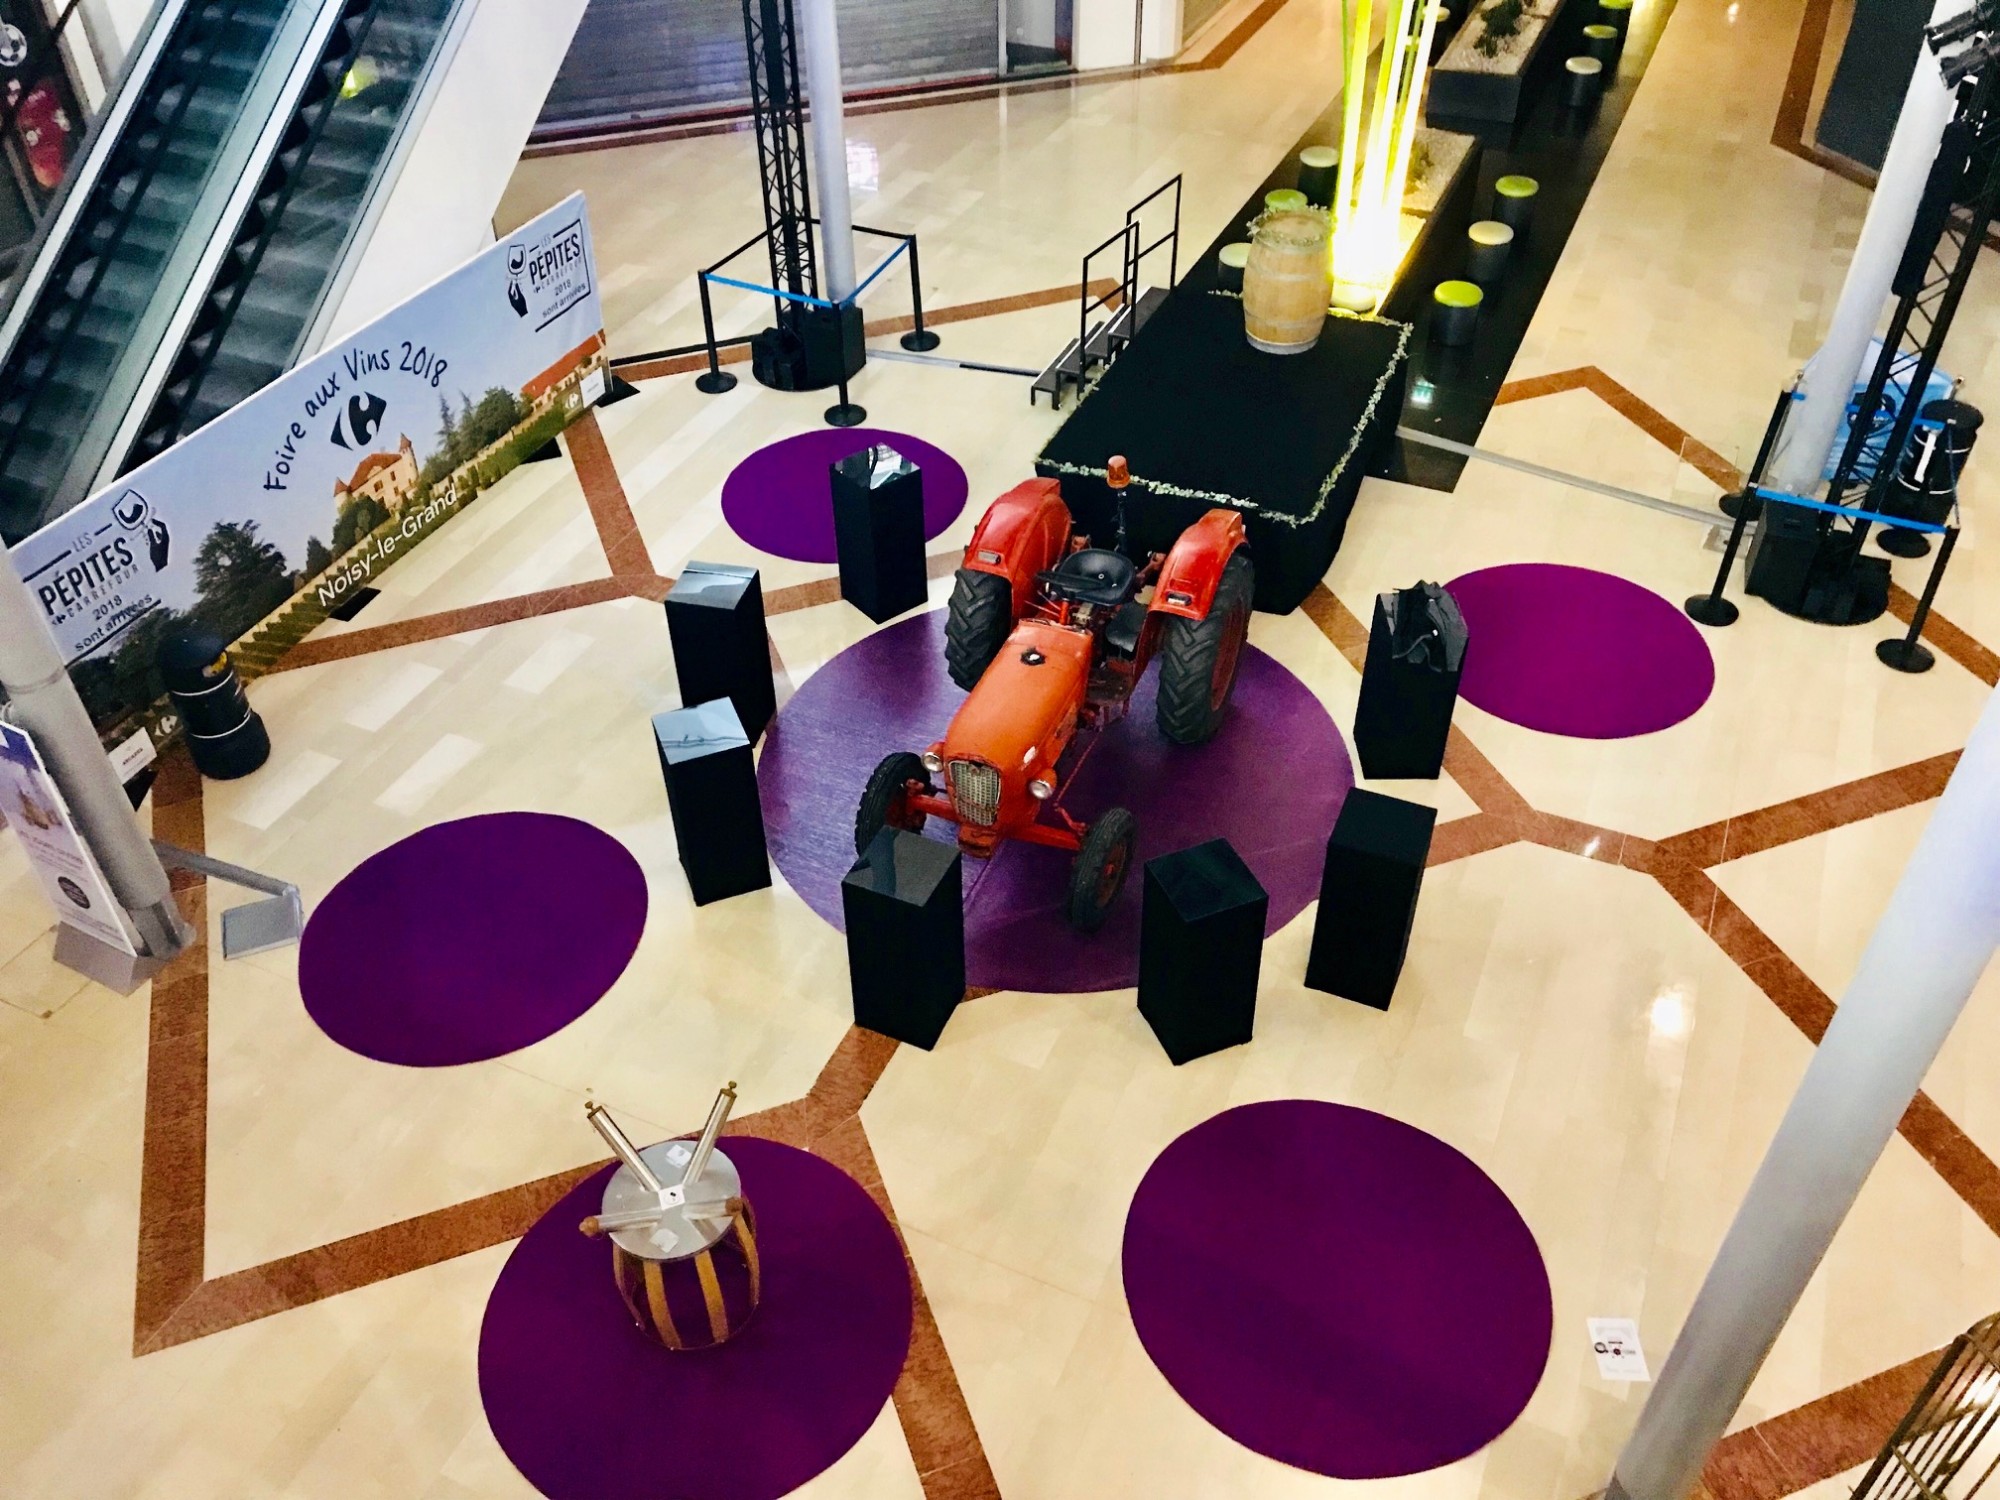 Mise en place de Moquette violette, Tonneaux à vin et présentoirs d'exposition lors de la foire aux Vins 2018 au Centre Commercial Les Arcades